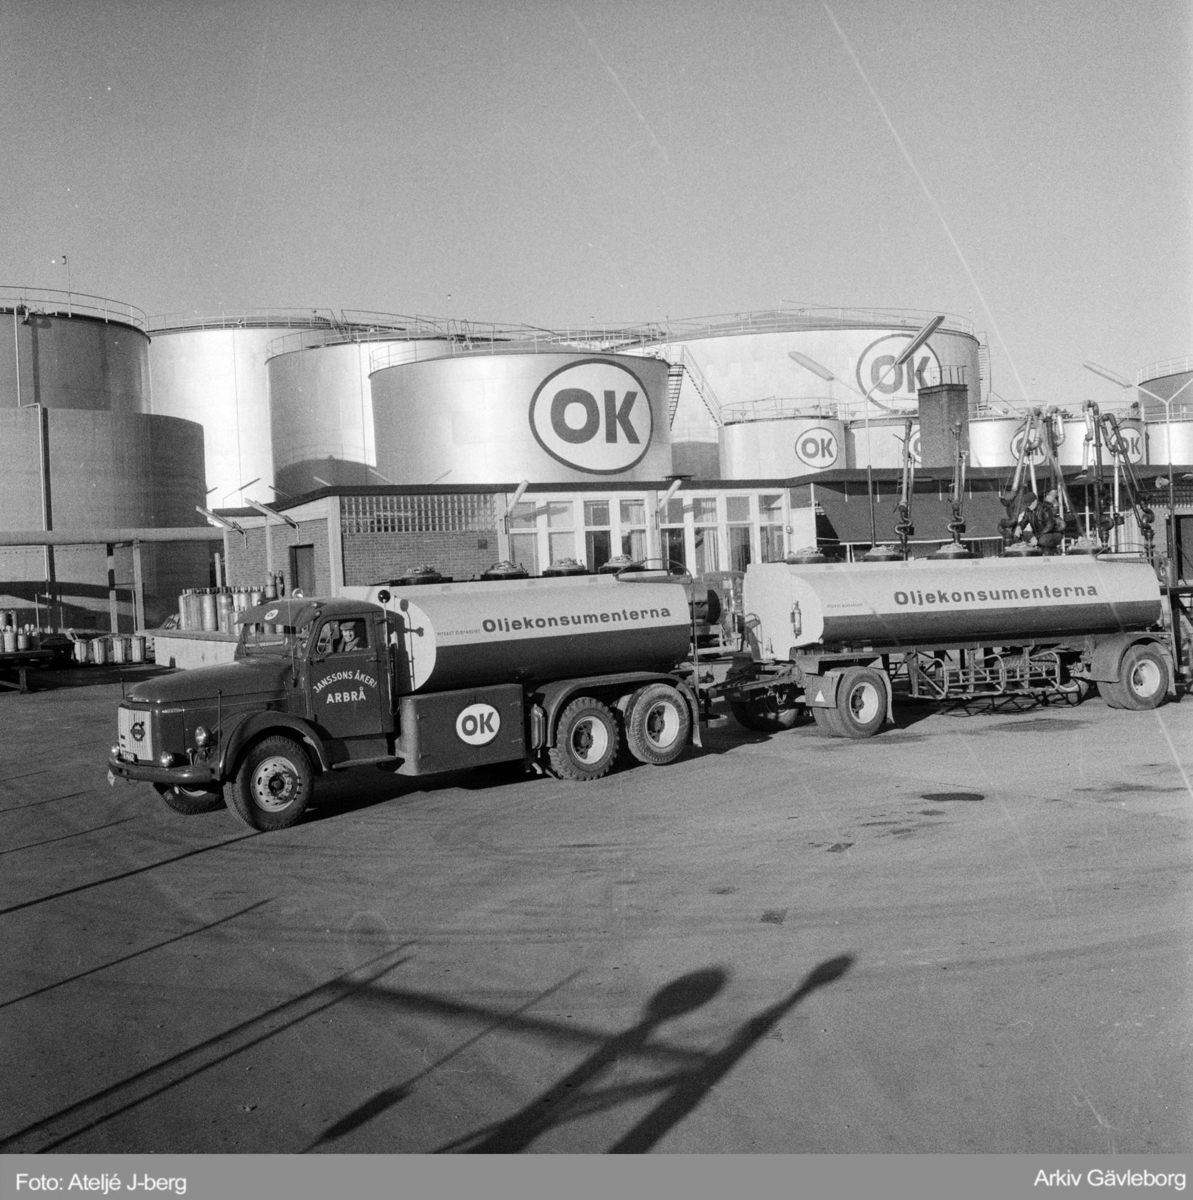 Janssons åkeri i Arbrå är tankbil för OK, 1960.